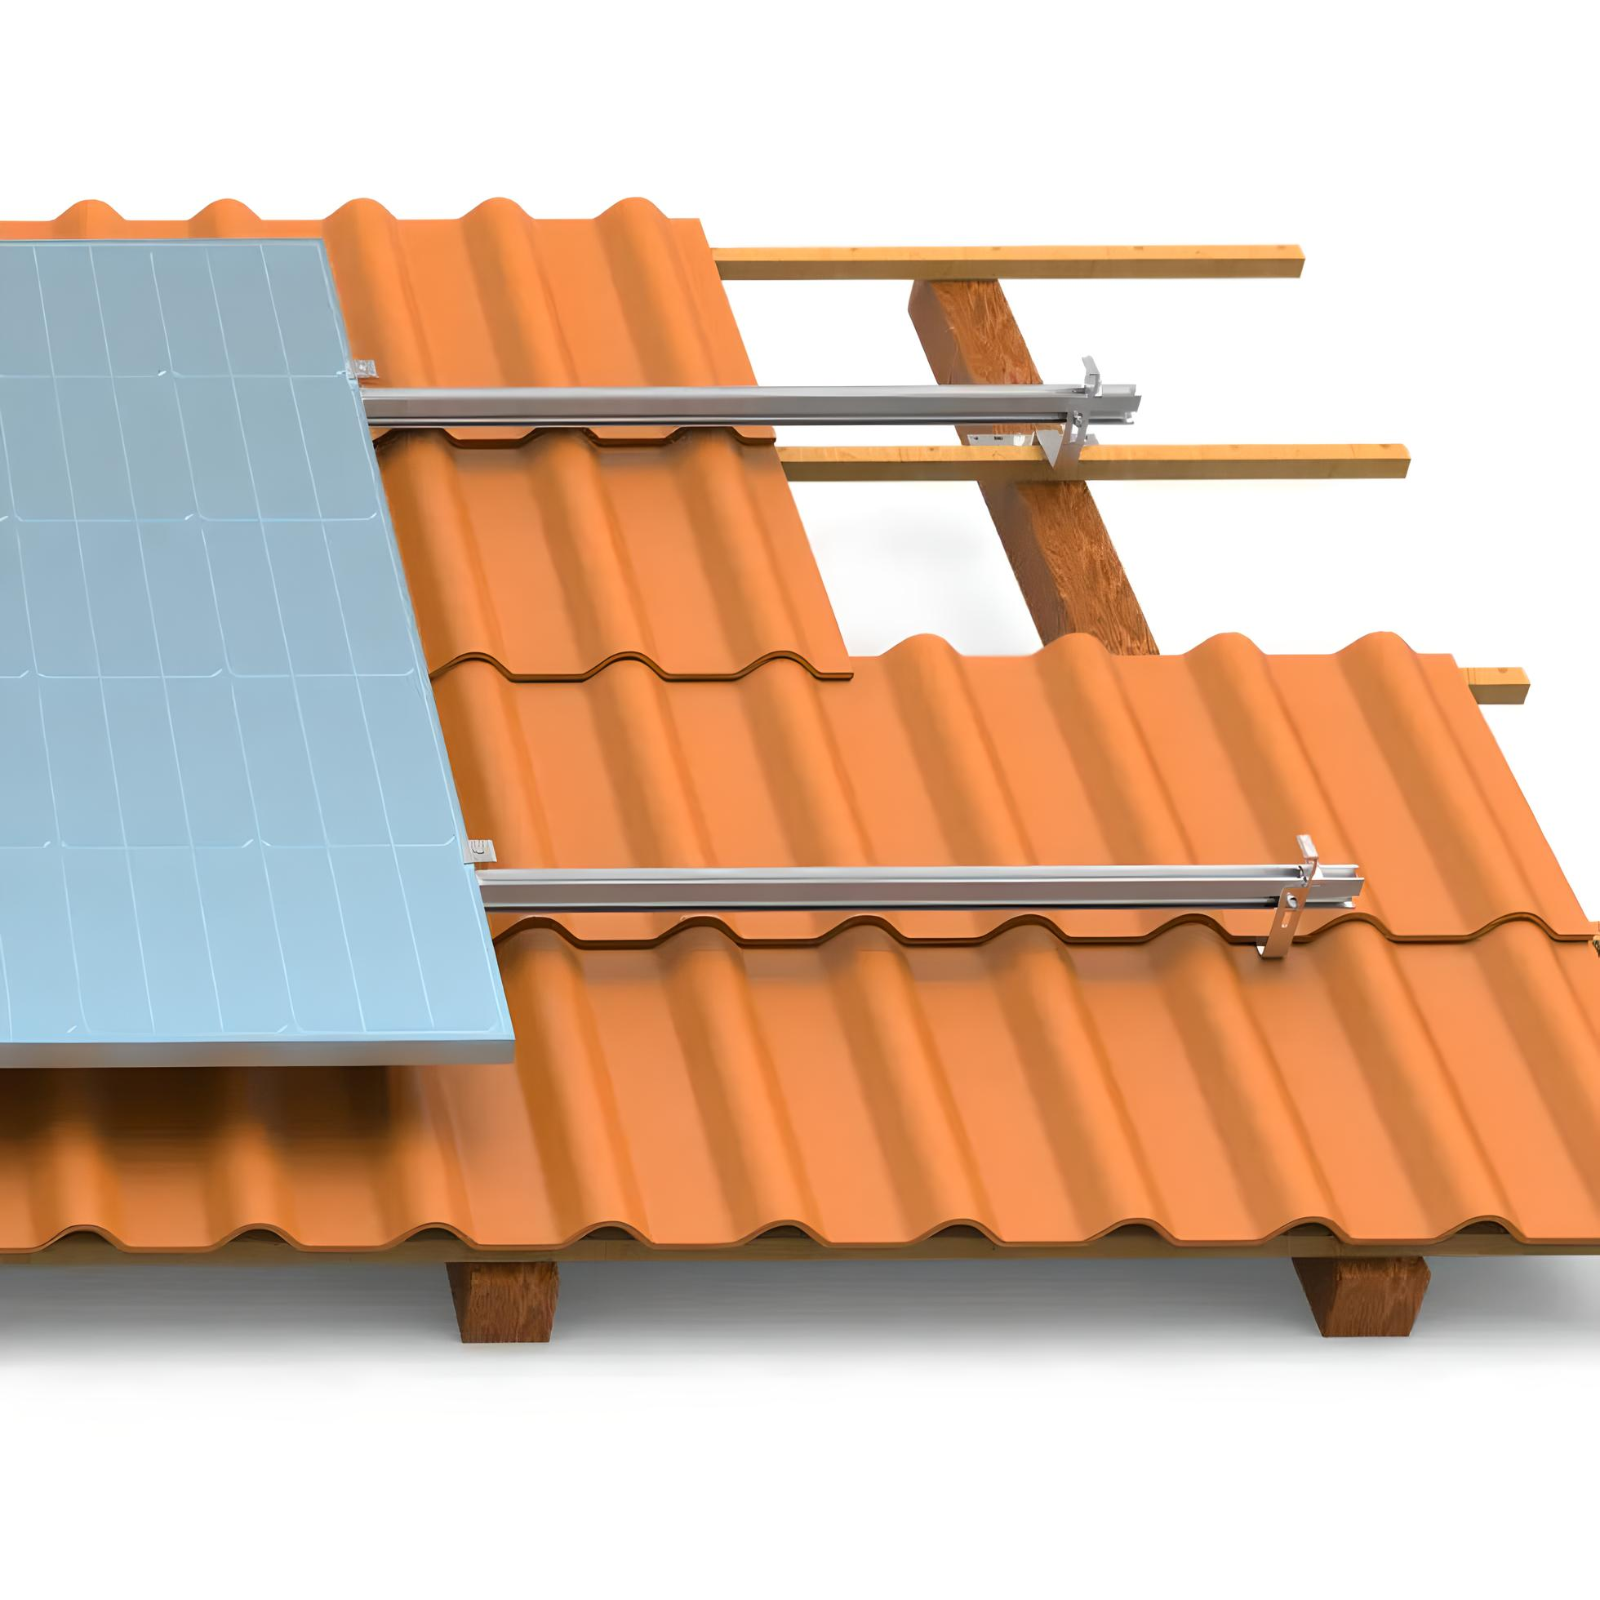 Solar Balkonkraftwerk Module Halterung TZIPower 2 Halterungs-Set Ziegeldach für